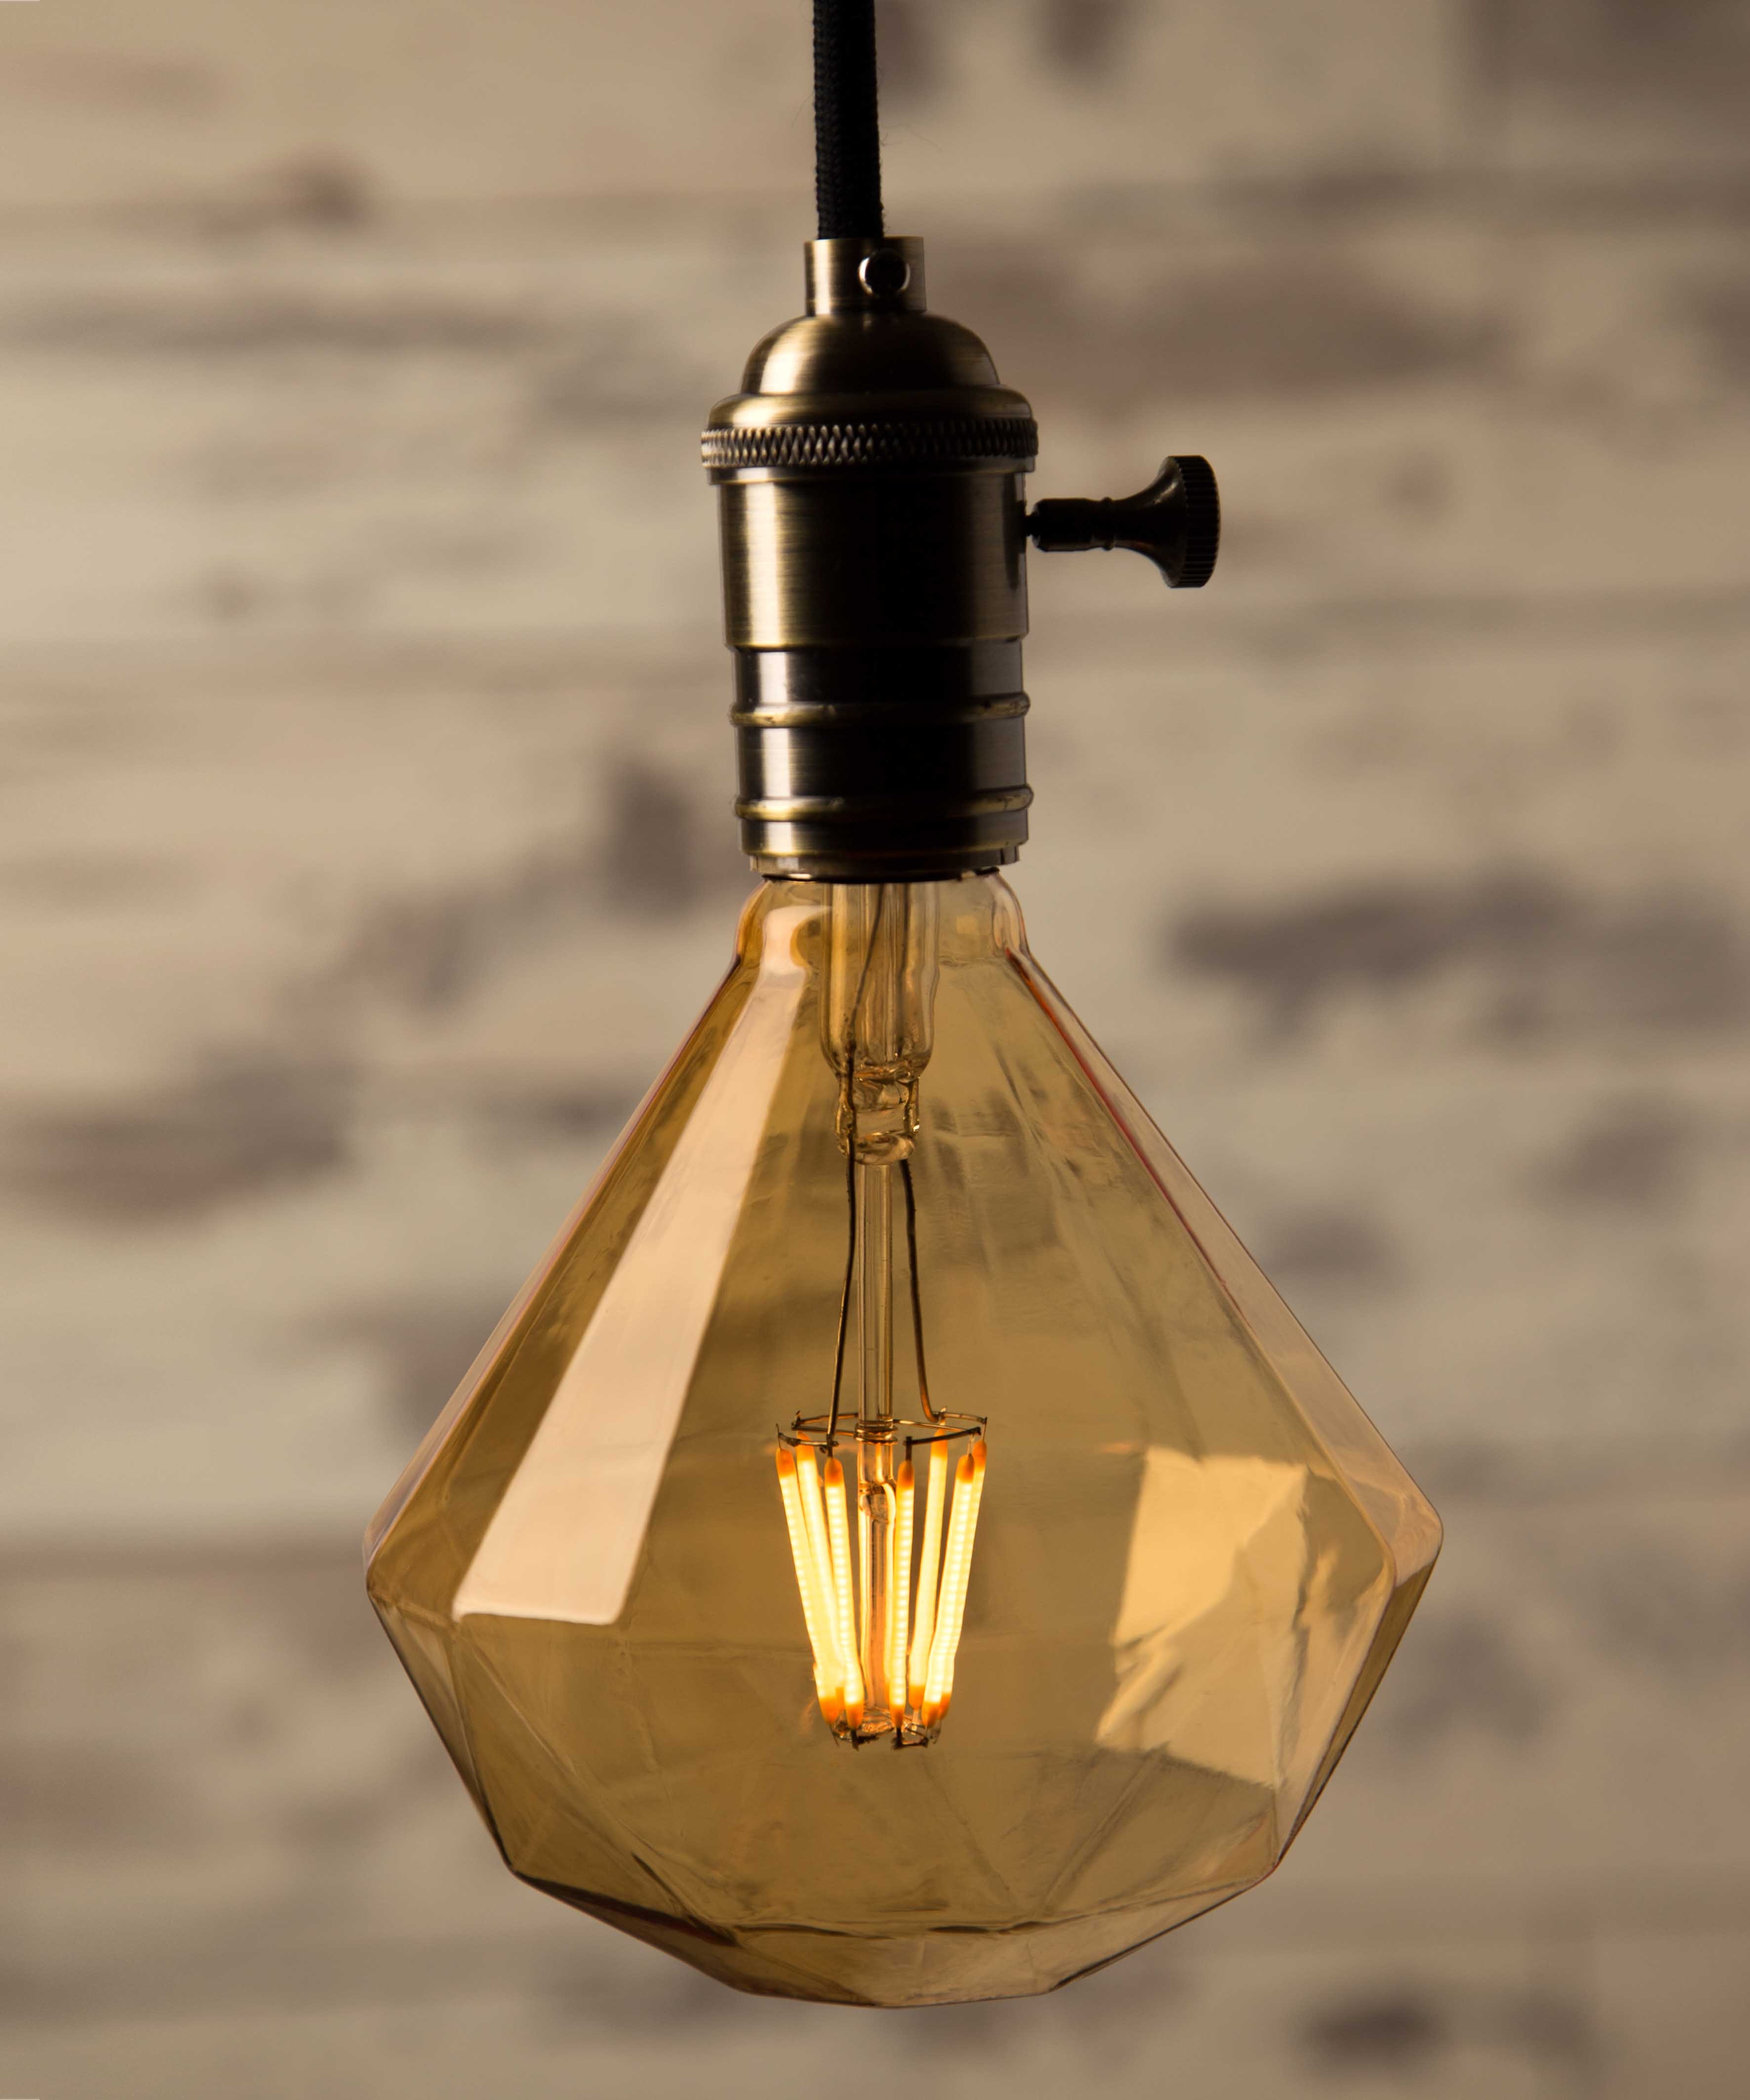 Low Energy Ceiling Light Bulbs